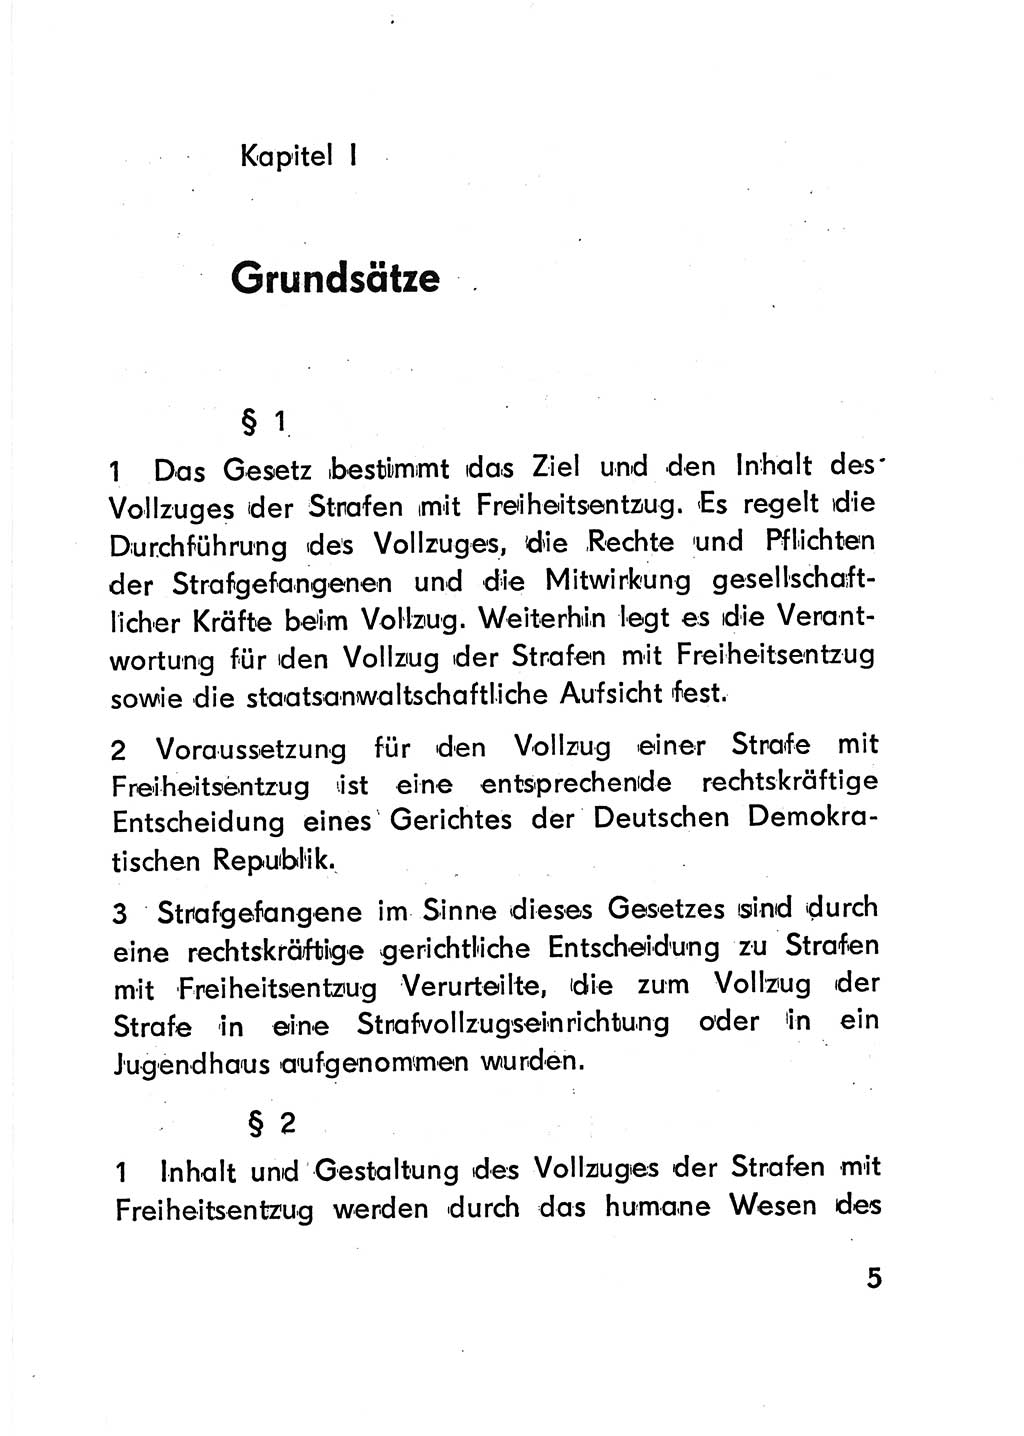 Gesetz über den Vollzug der Strafen mit Freiheitsentzug (Strafvollzugsgesetz) - StVG - [Deutsche Demokratische Republik (DDR)] 1977, Seite 5 (StVG DDR 1977, S. 5)